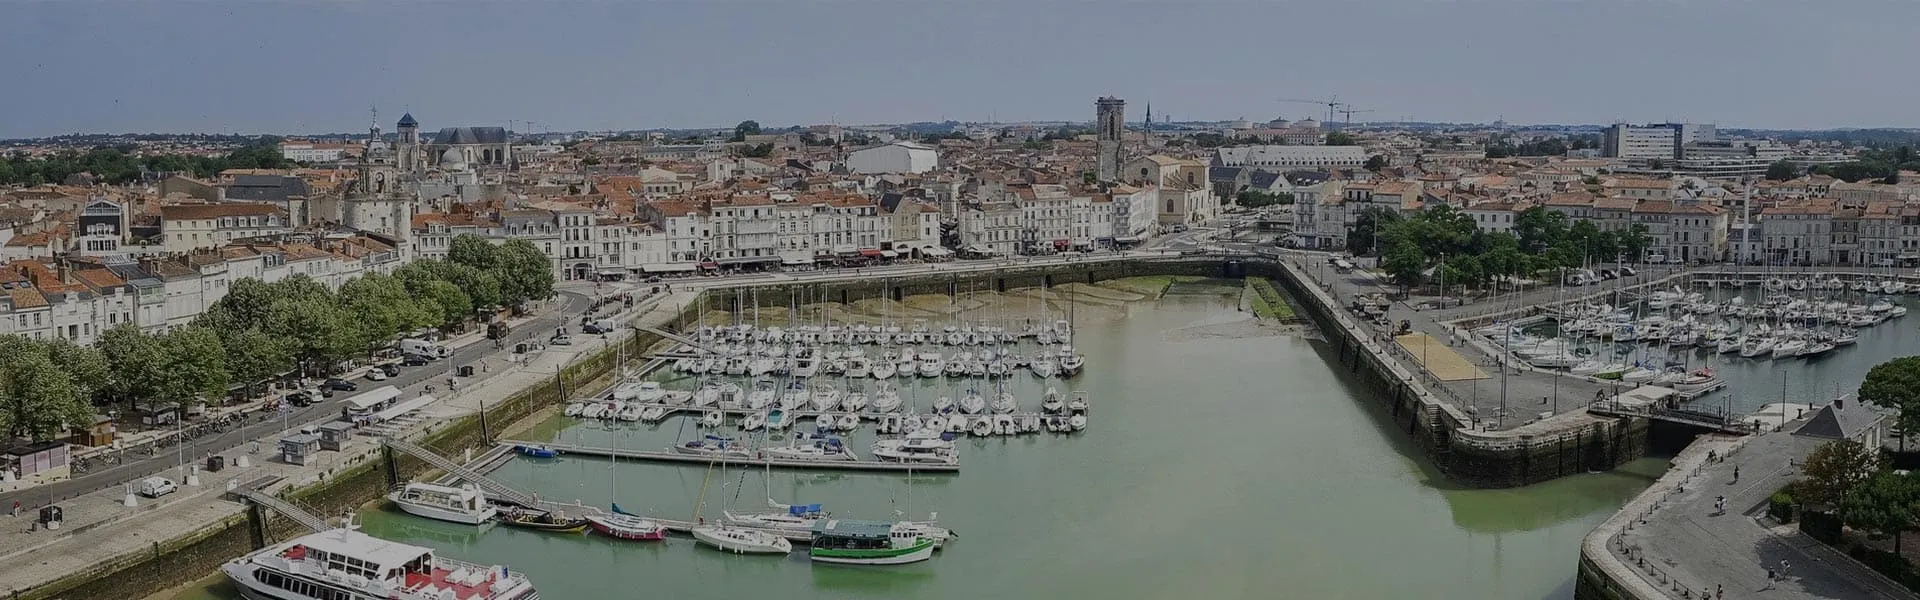 Photographie du port de La Rochelle